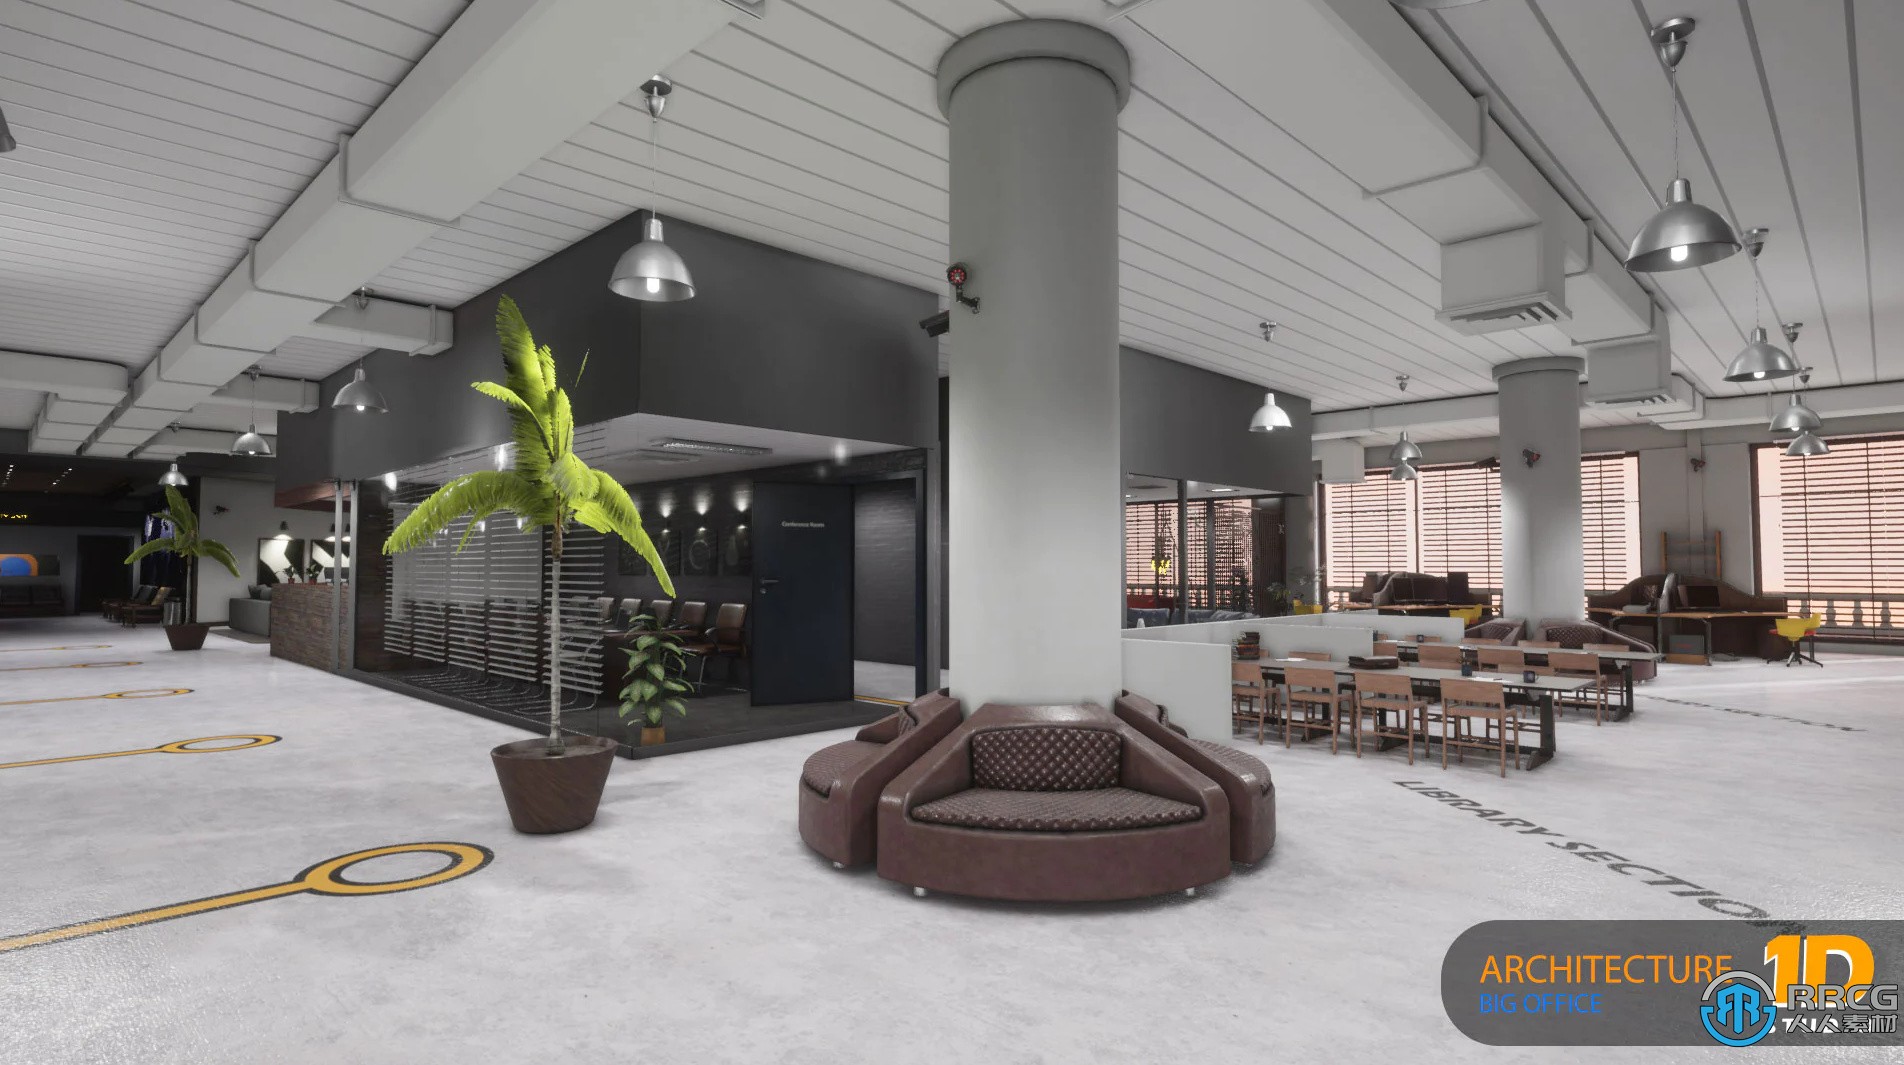 大型办公室室内环境场景Unreal Engine游戏素材资源